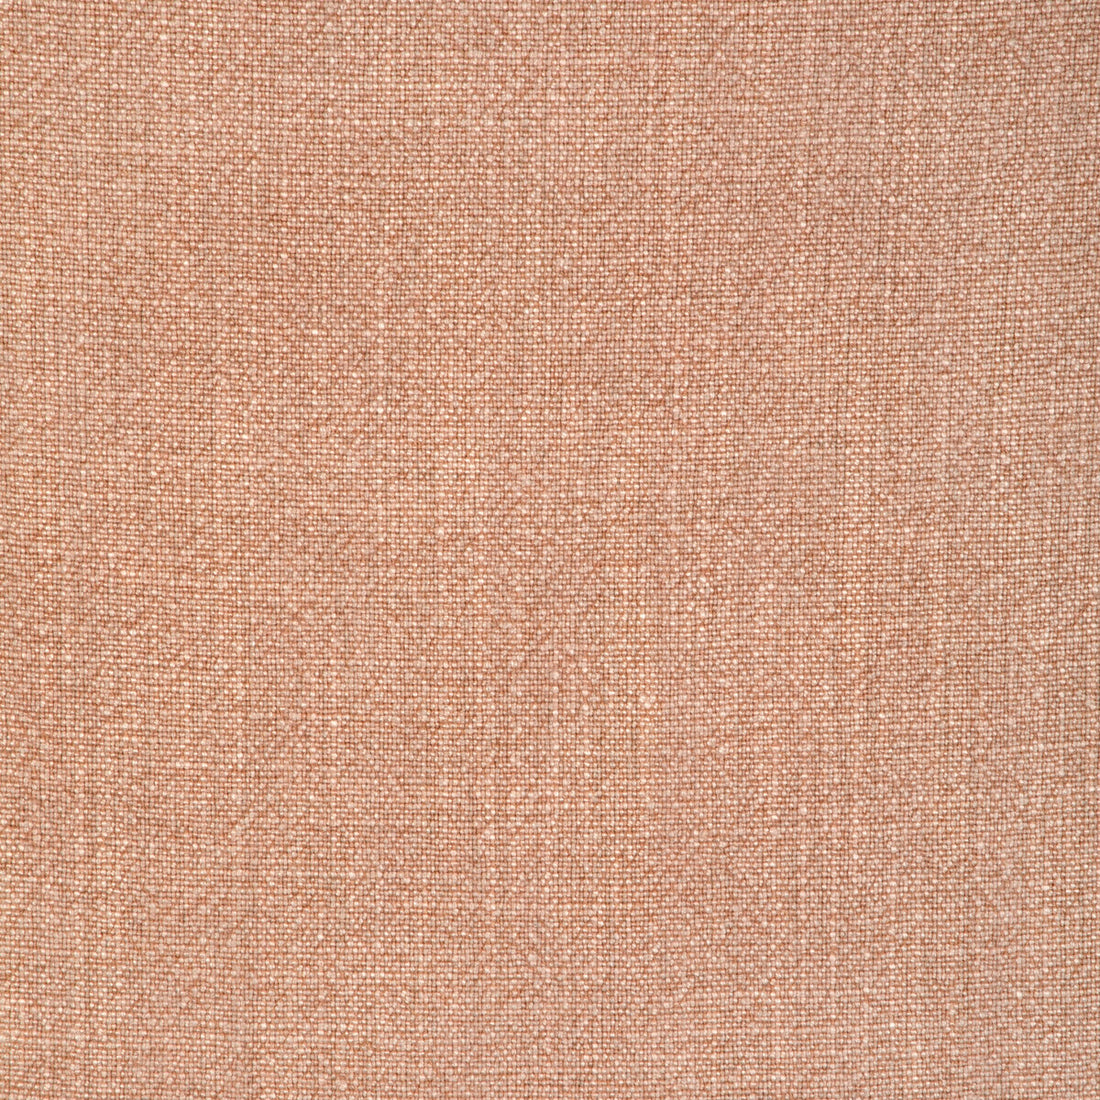 Kravet Basics fabric in 35189-712 color - pattern 35189.712.0 - by Kravet Basics